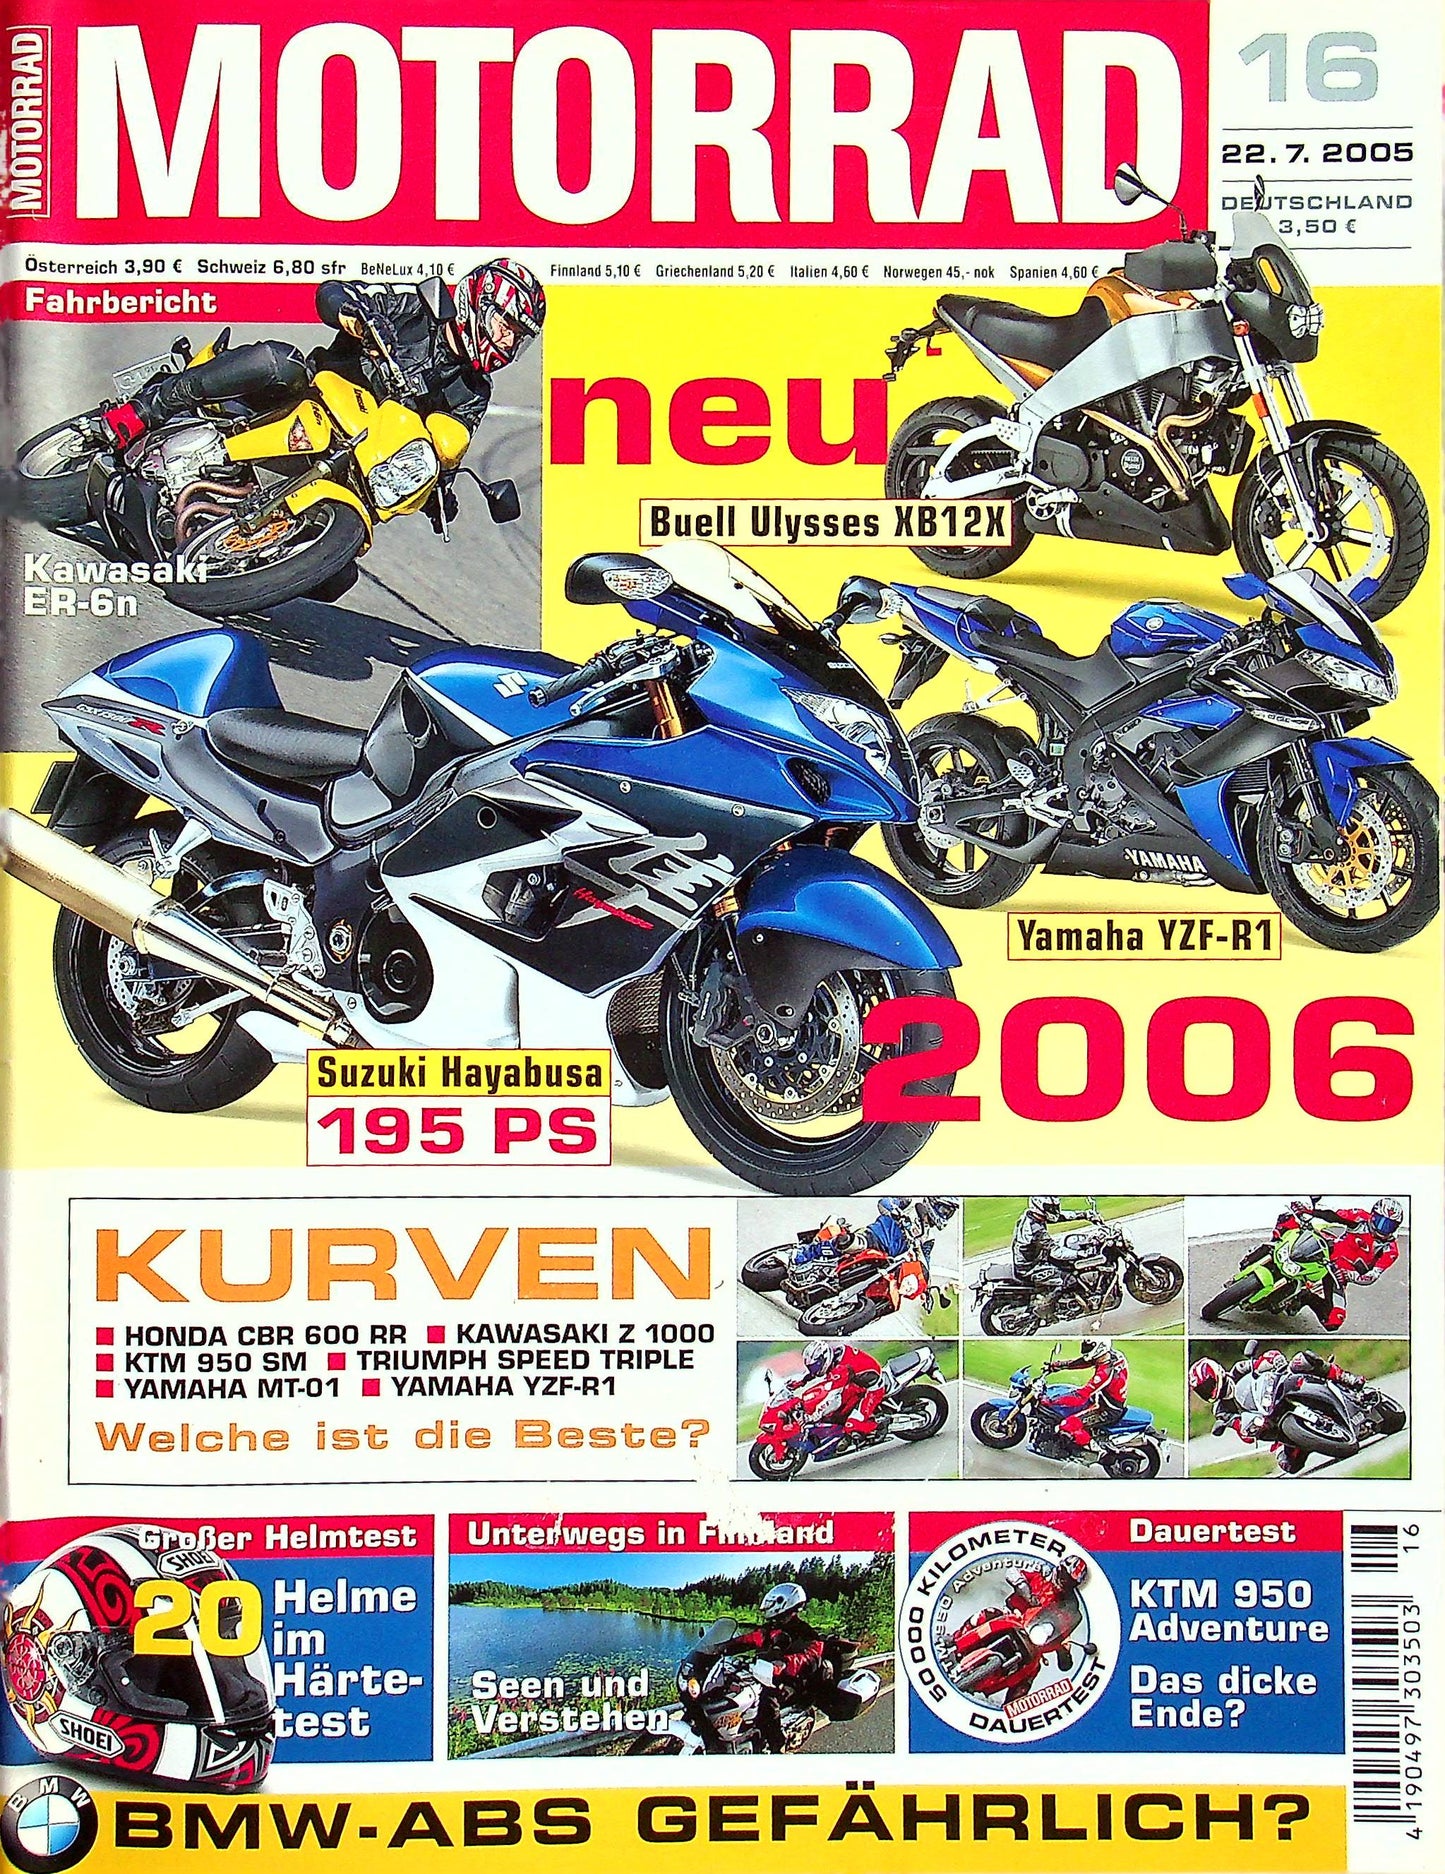 Motorrad 16/2005